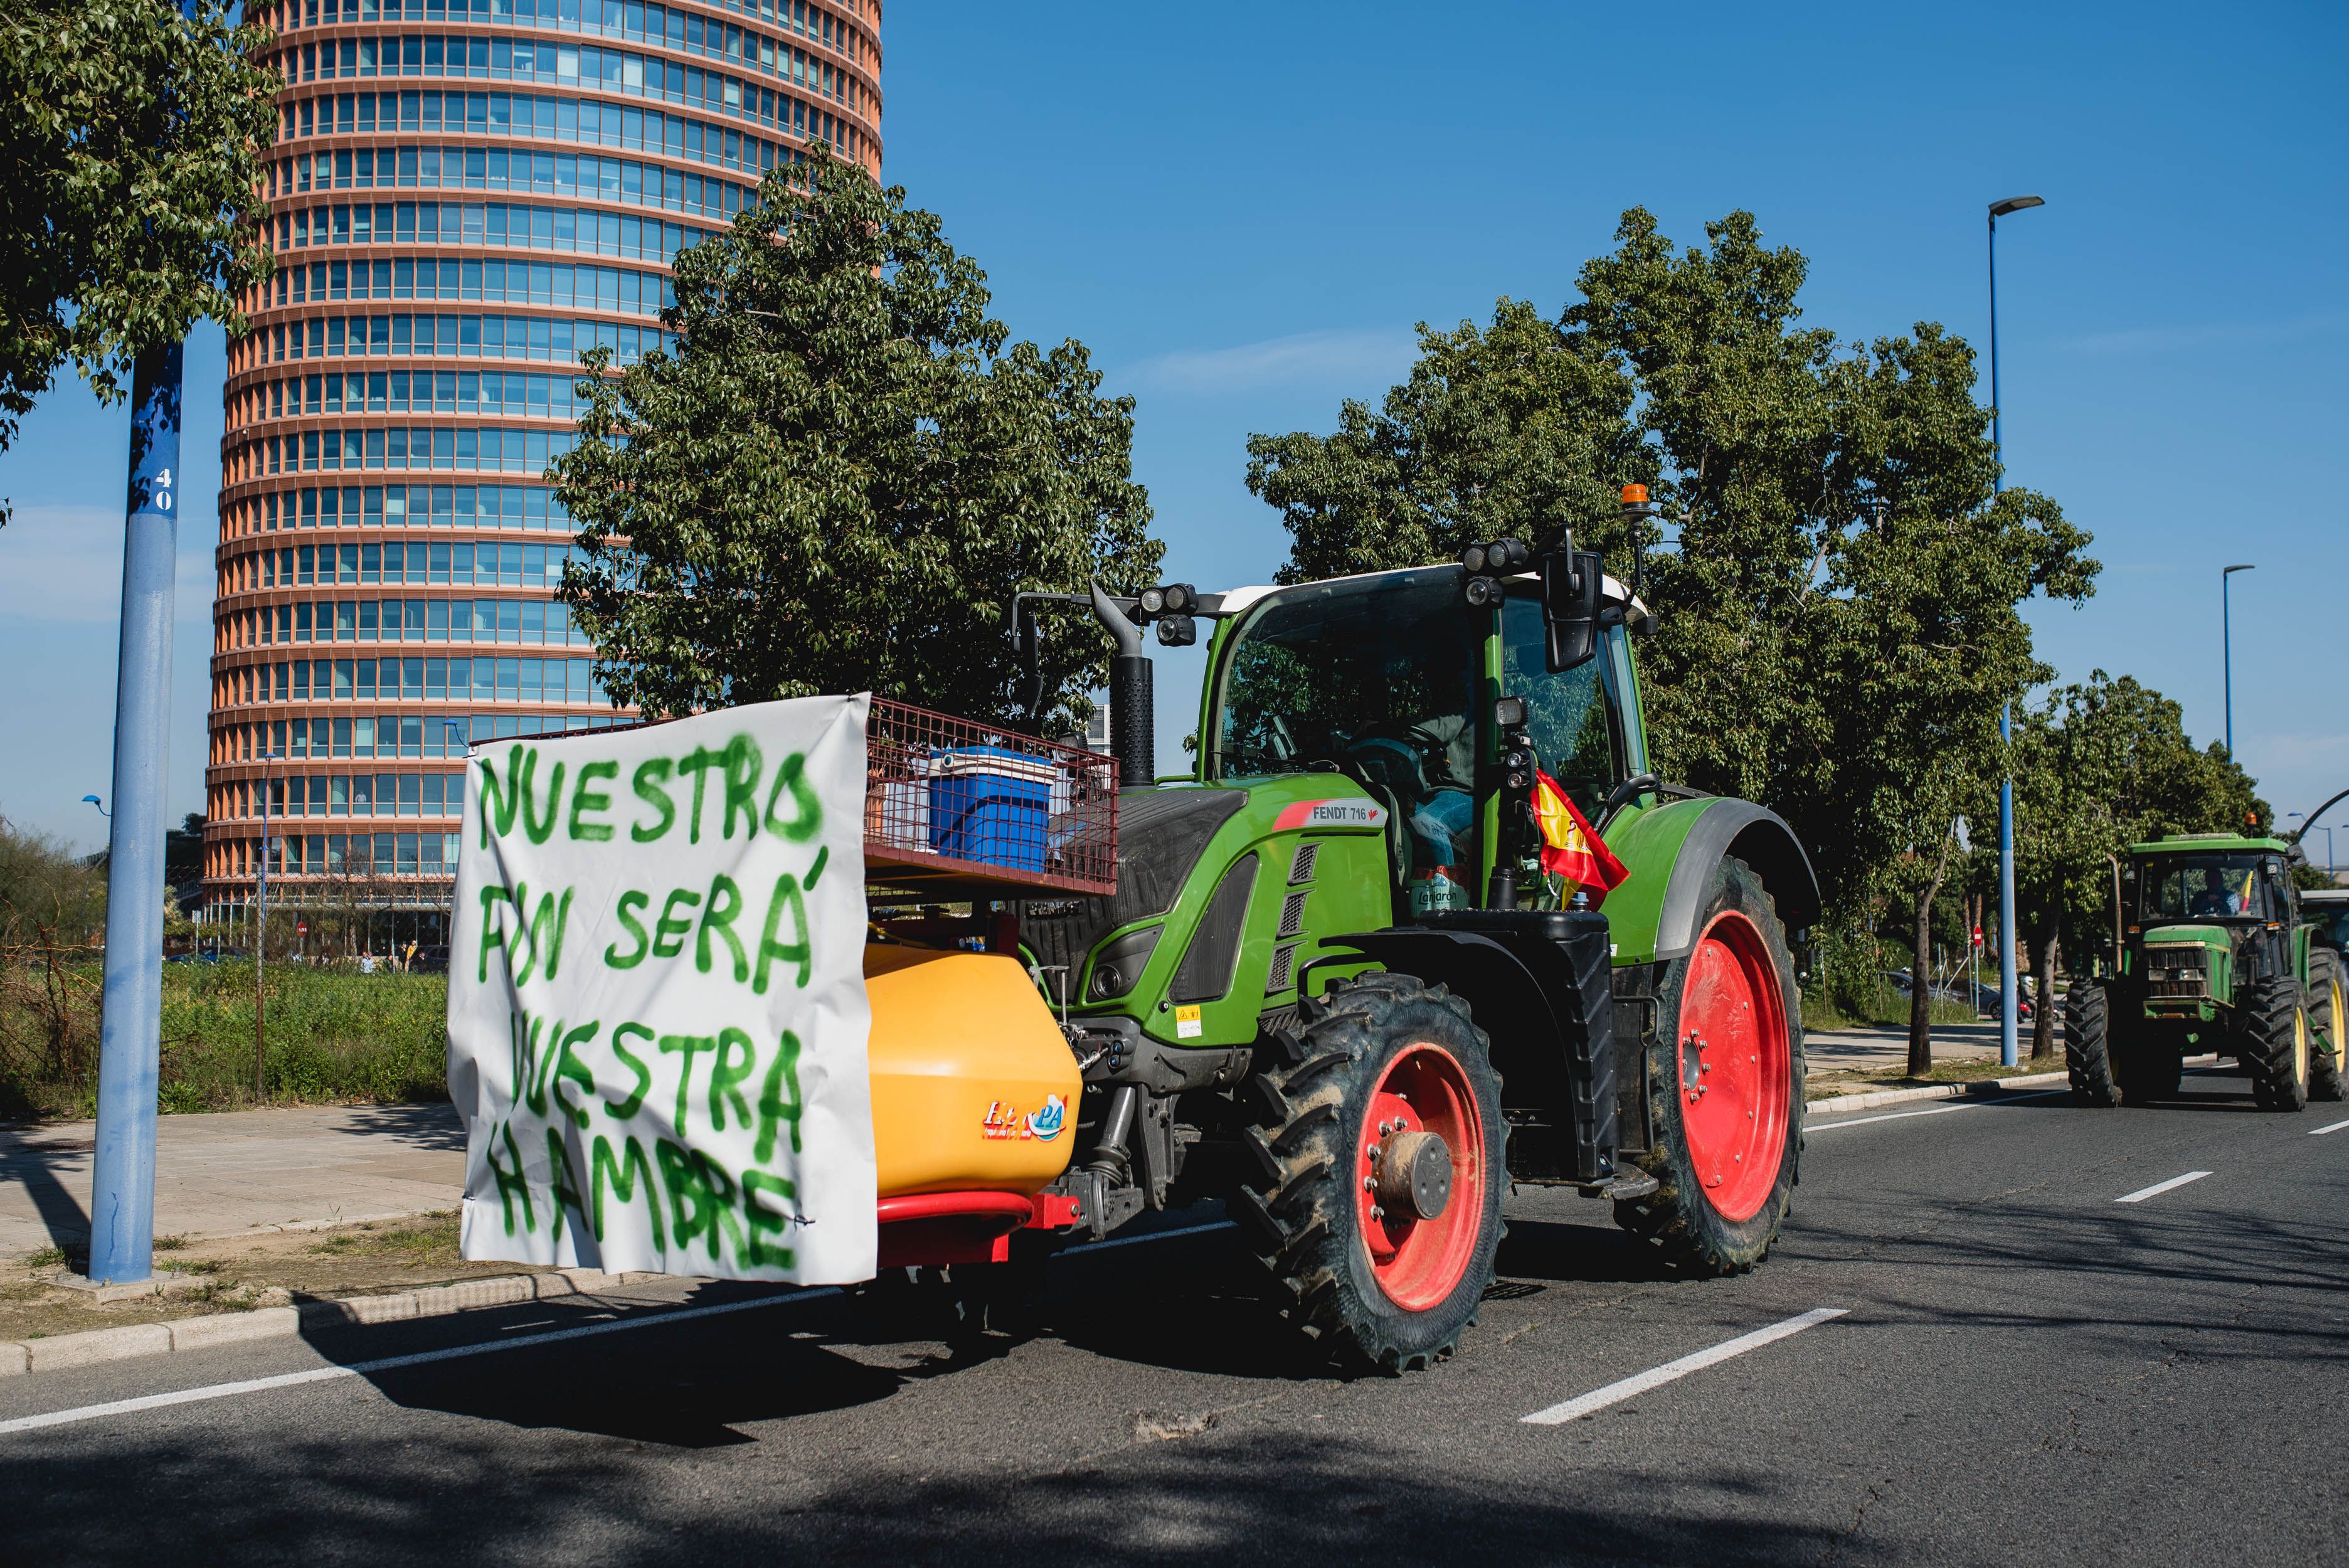 La tractorada en Torre Sevilla.